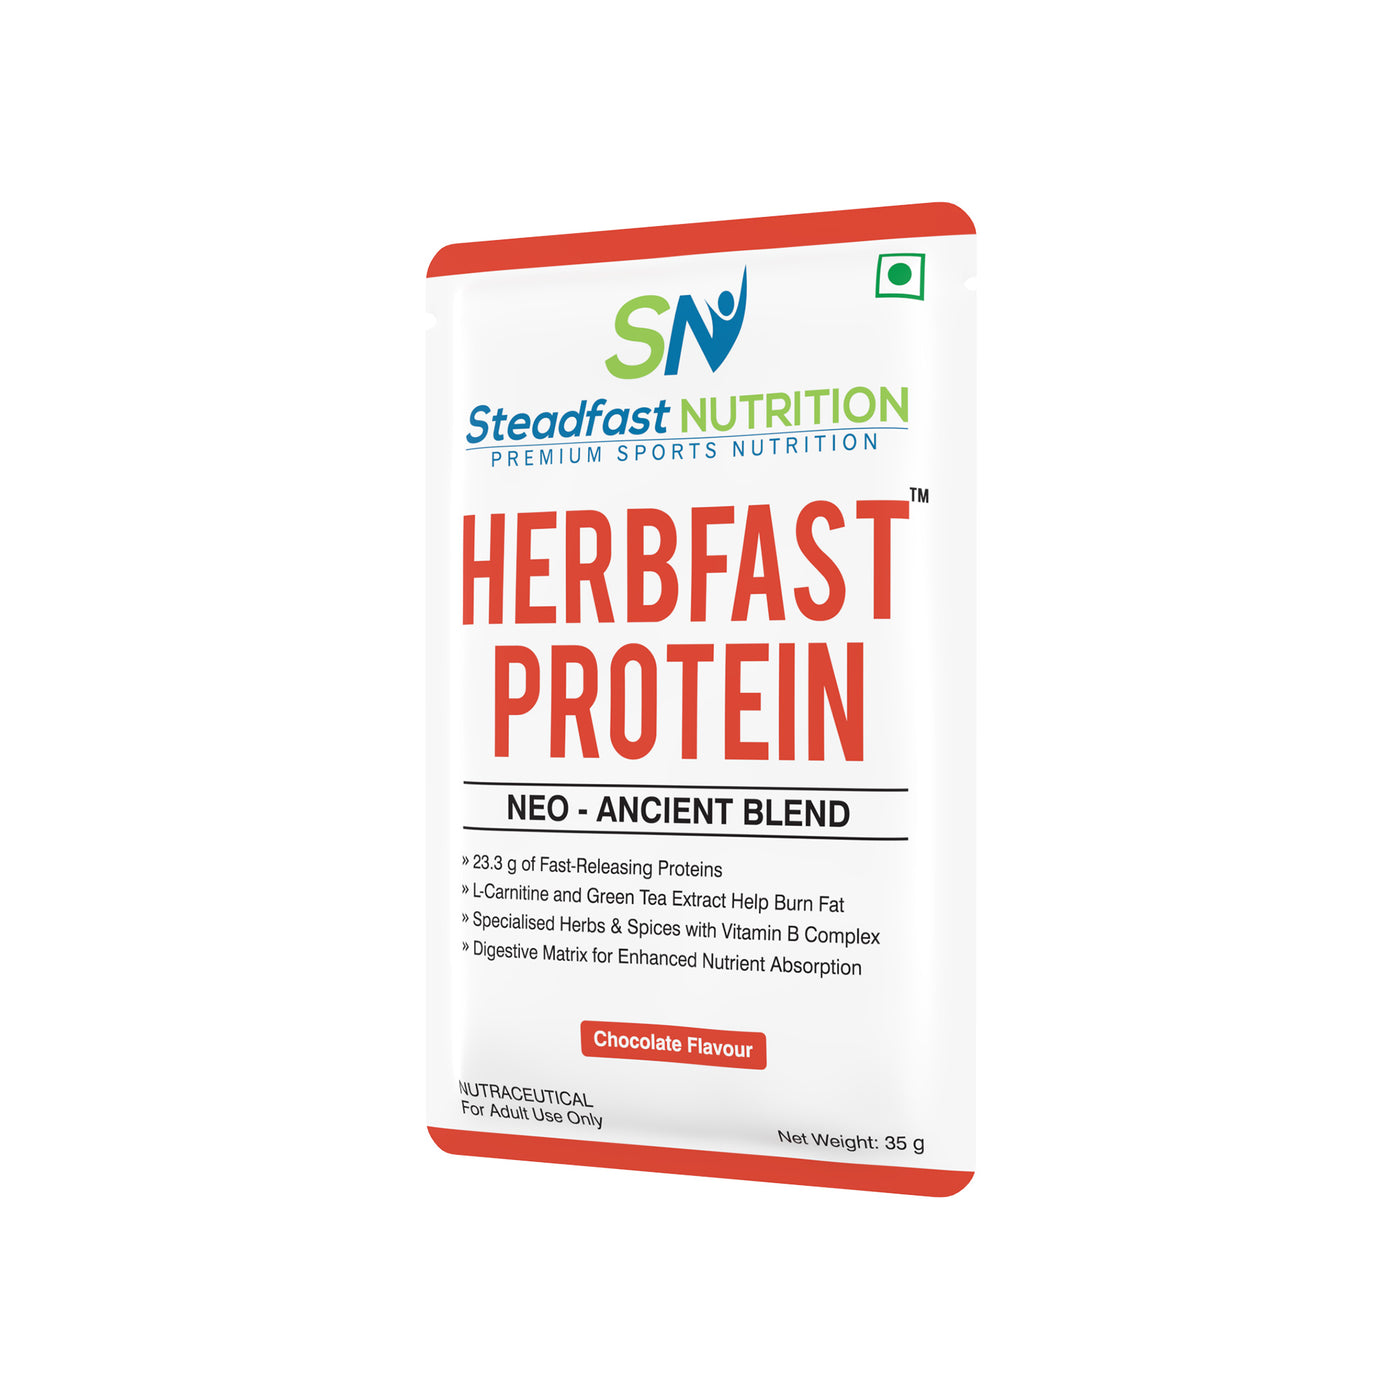 HerbFast Protein